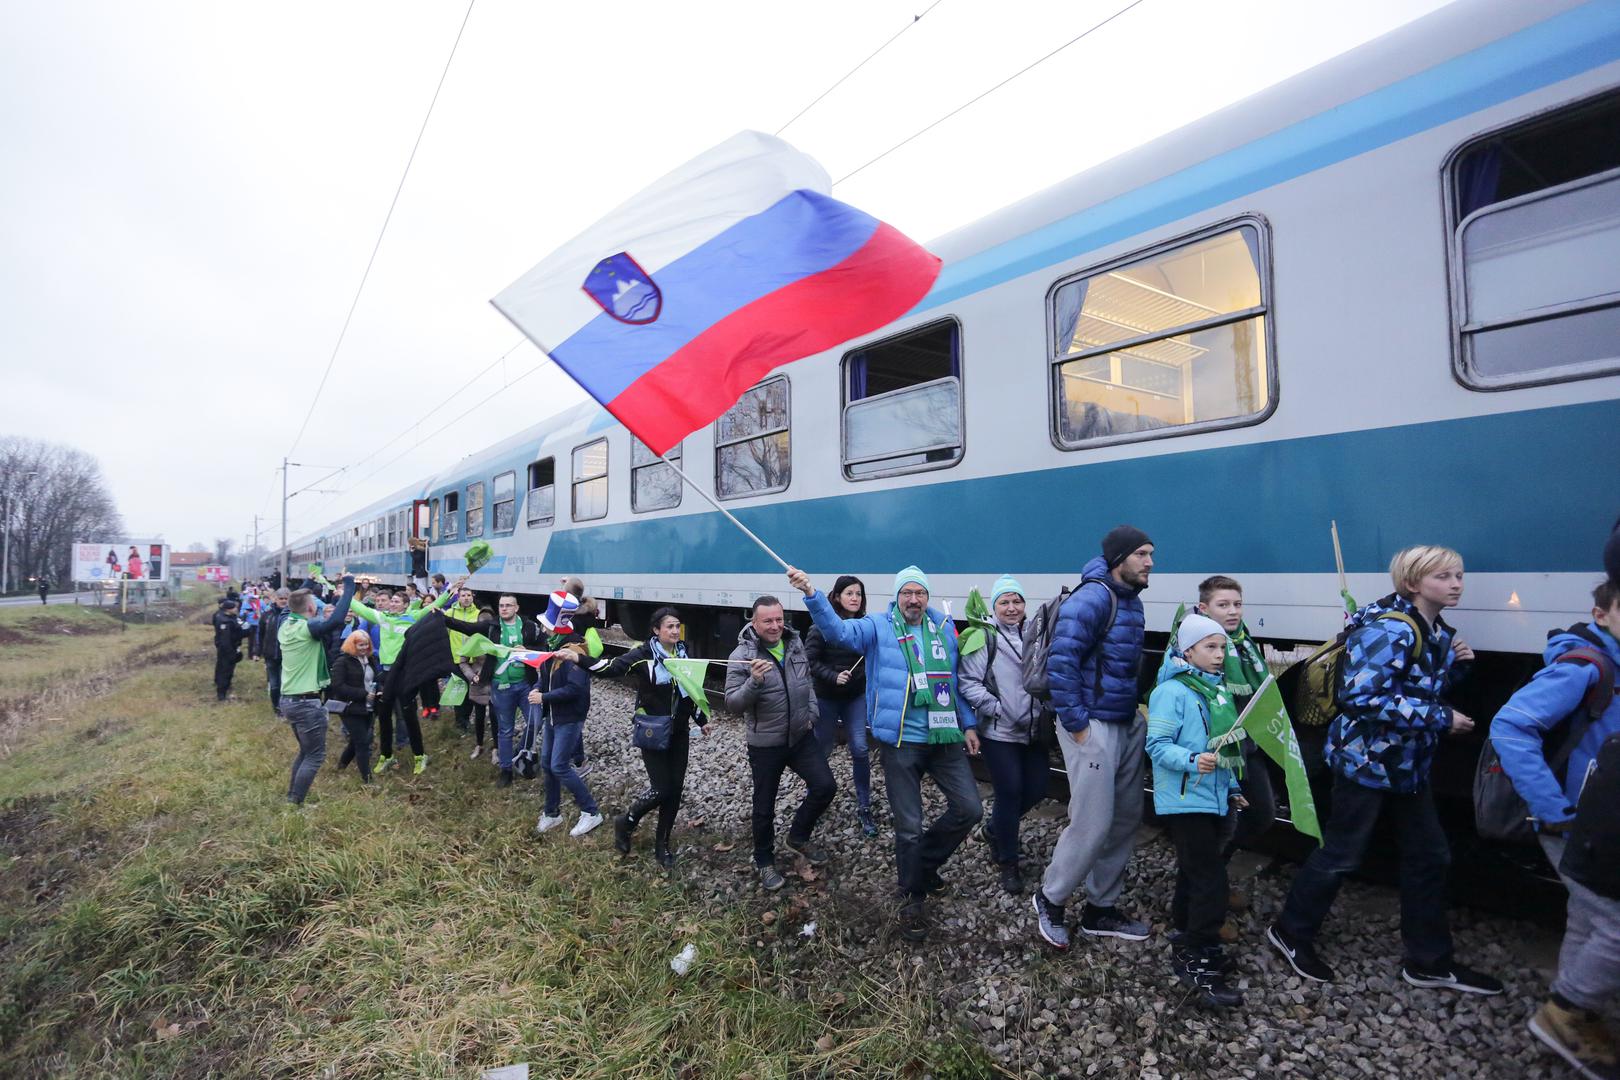 Slovenski navijači vlakom su stigli u zagreb kako bi uživo bodrili svoju rukometnu reprezentaciju na Europskom prvenstvu koje se igra u Hrvatskoj.